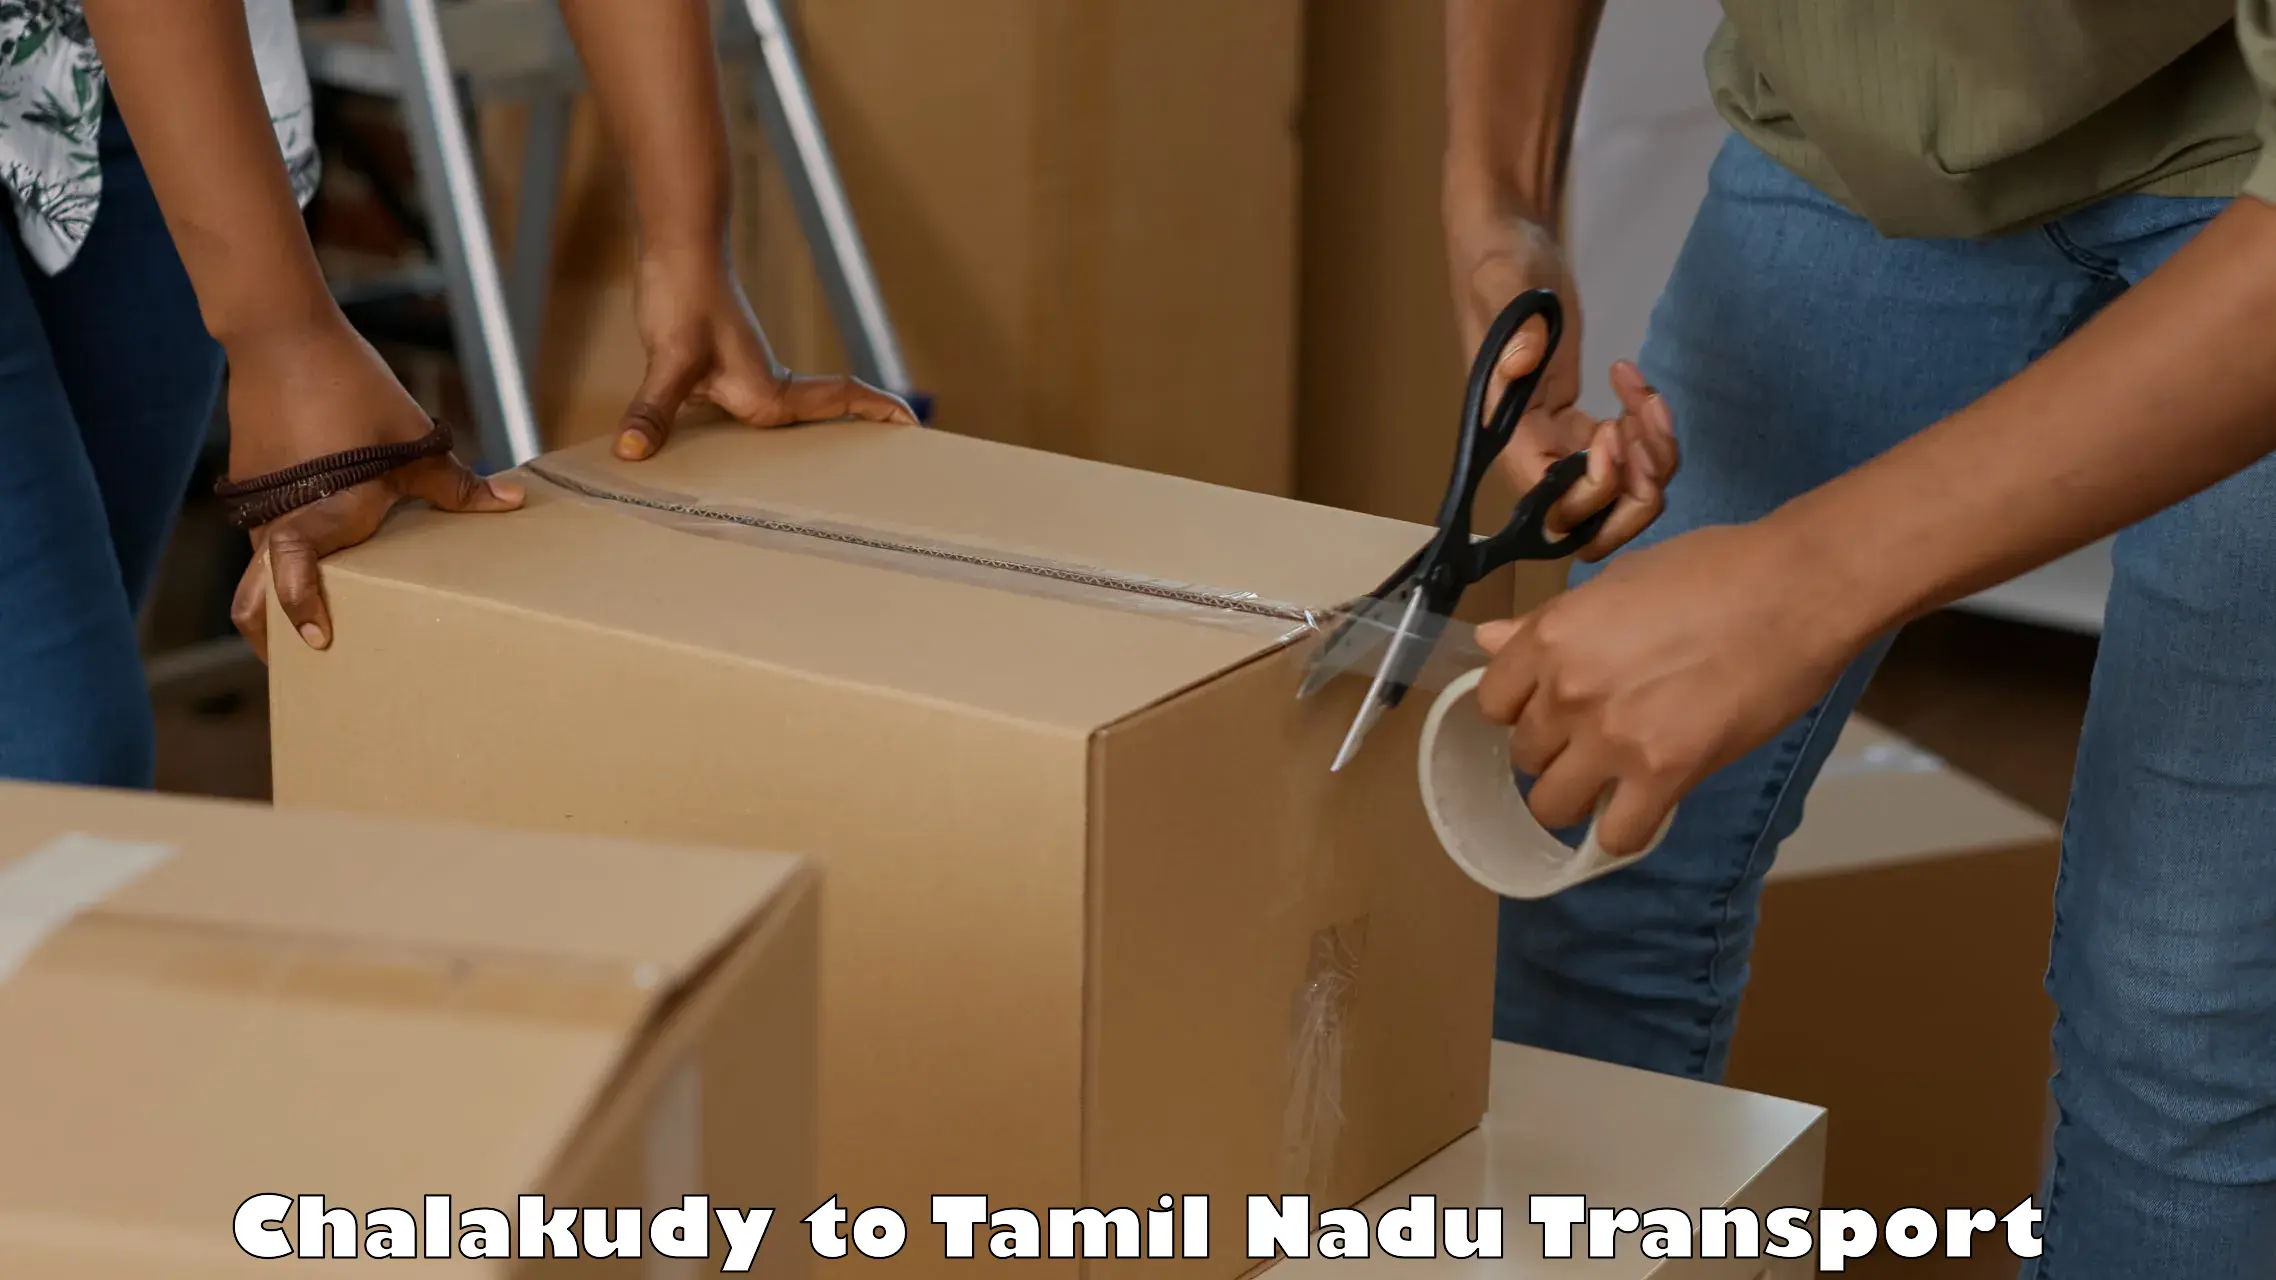 Pick up transport service Chalakudy to Kudankulam